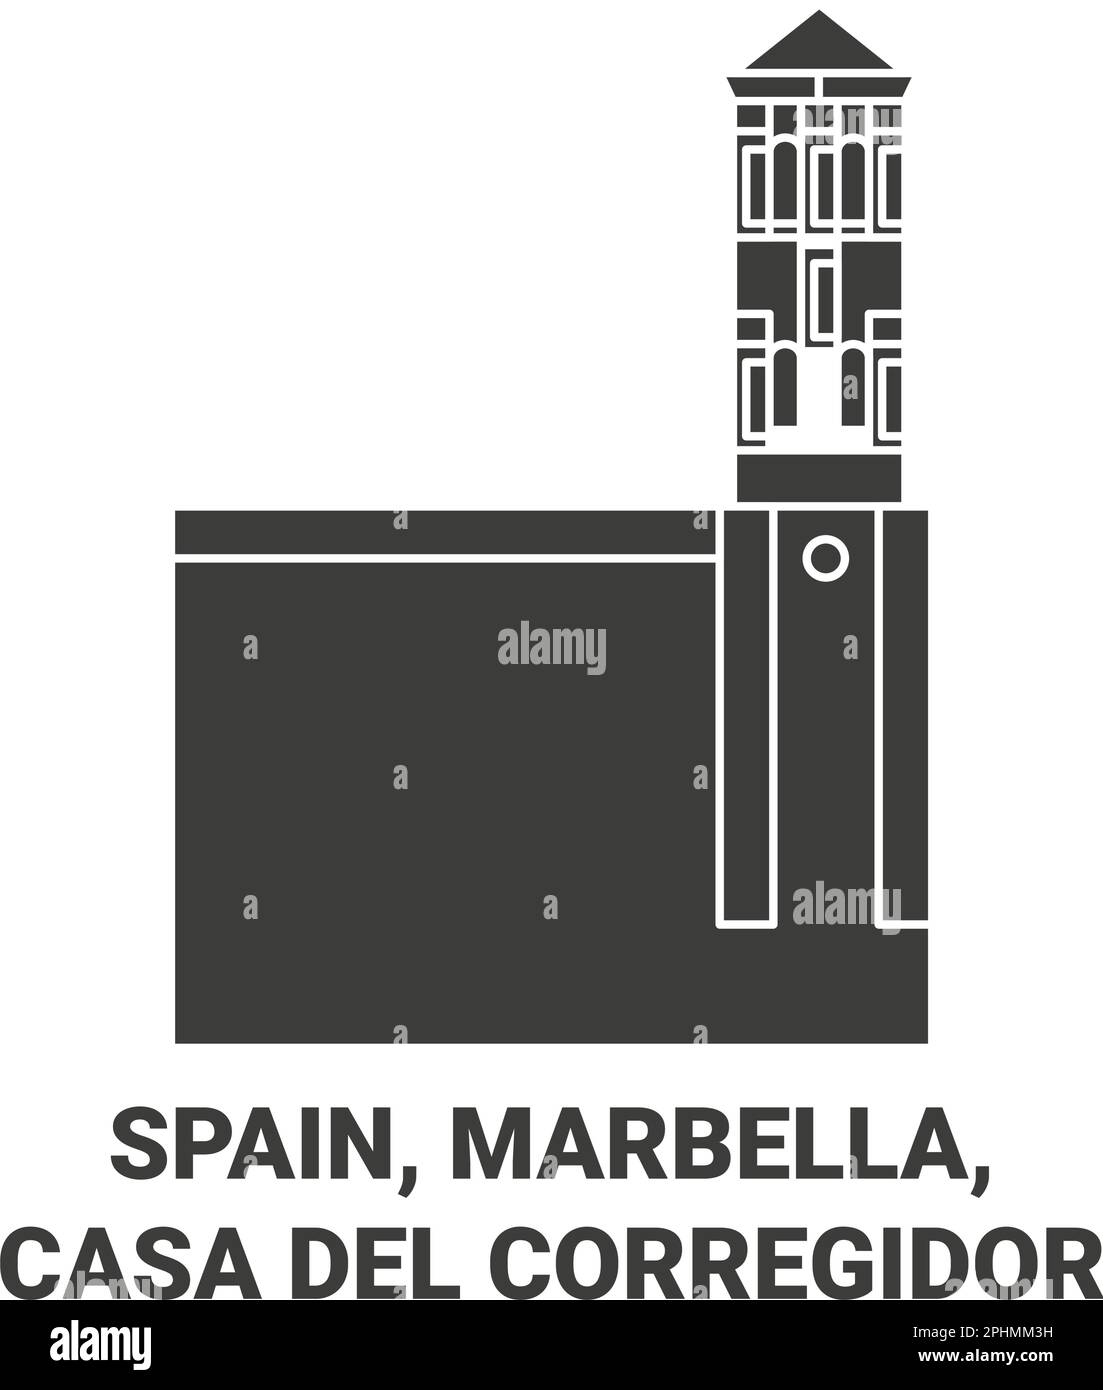 España, Marbella, Casa del Corregidor ilustración vectorial de referencia de viaje Ilustración del Vector